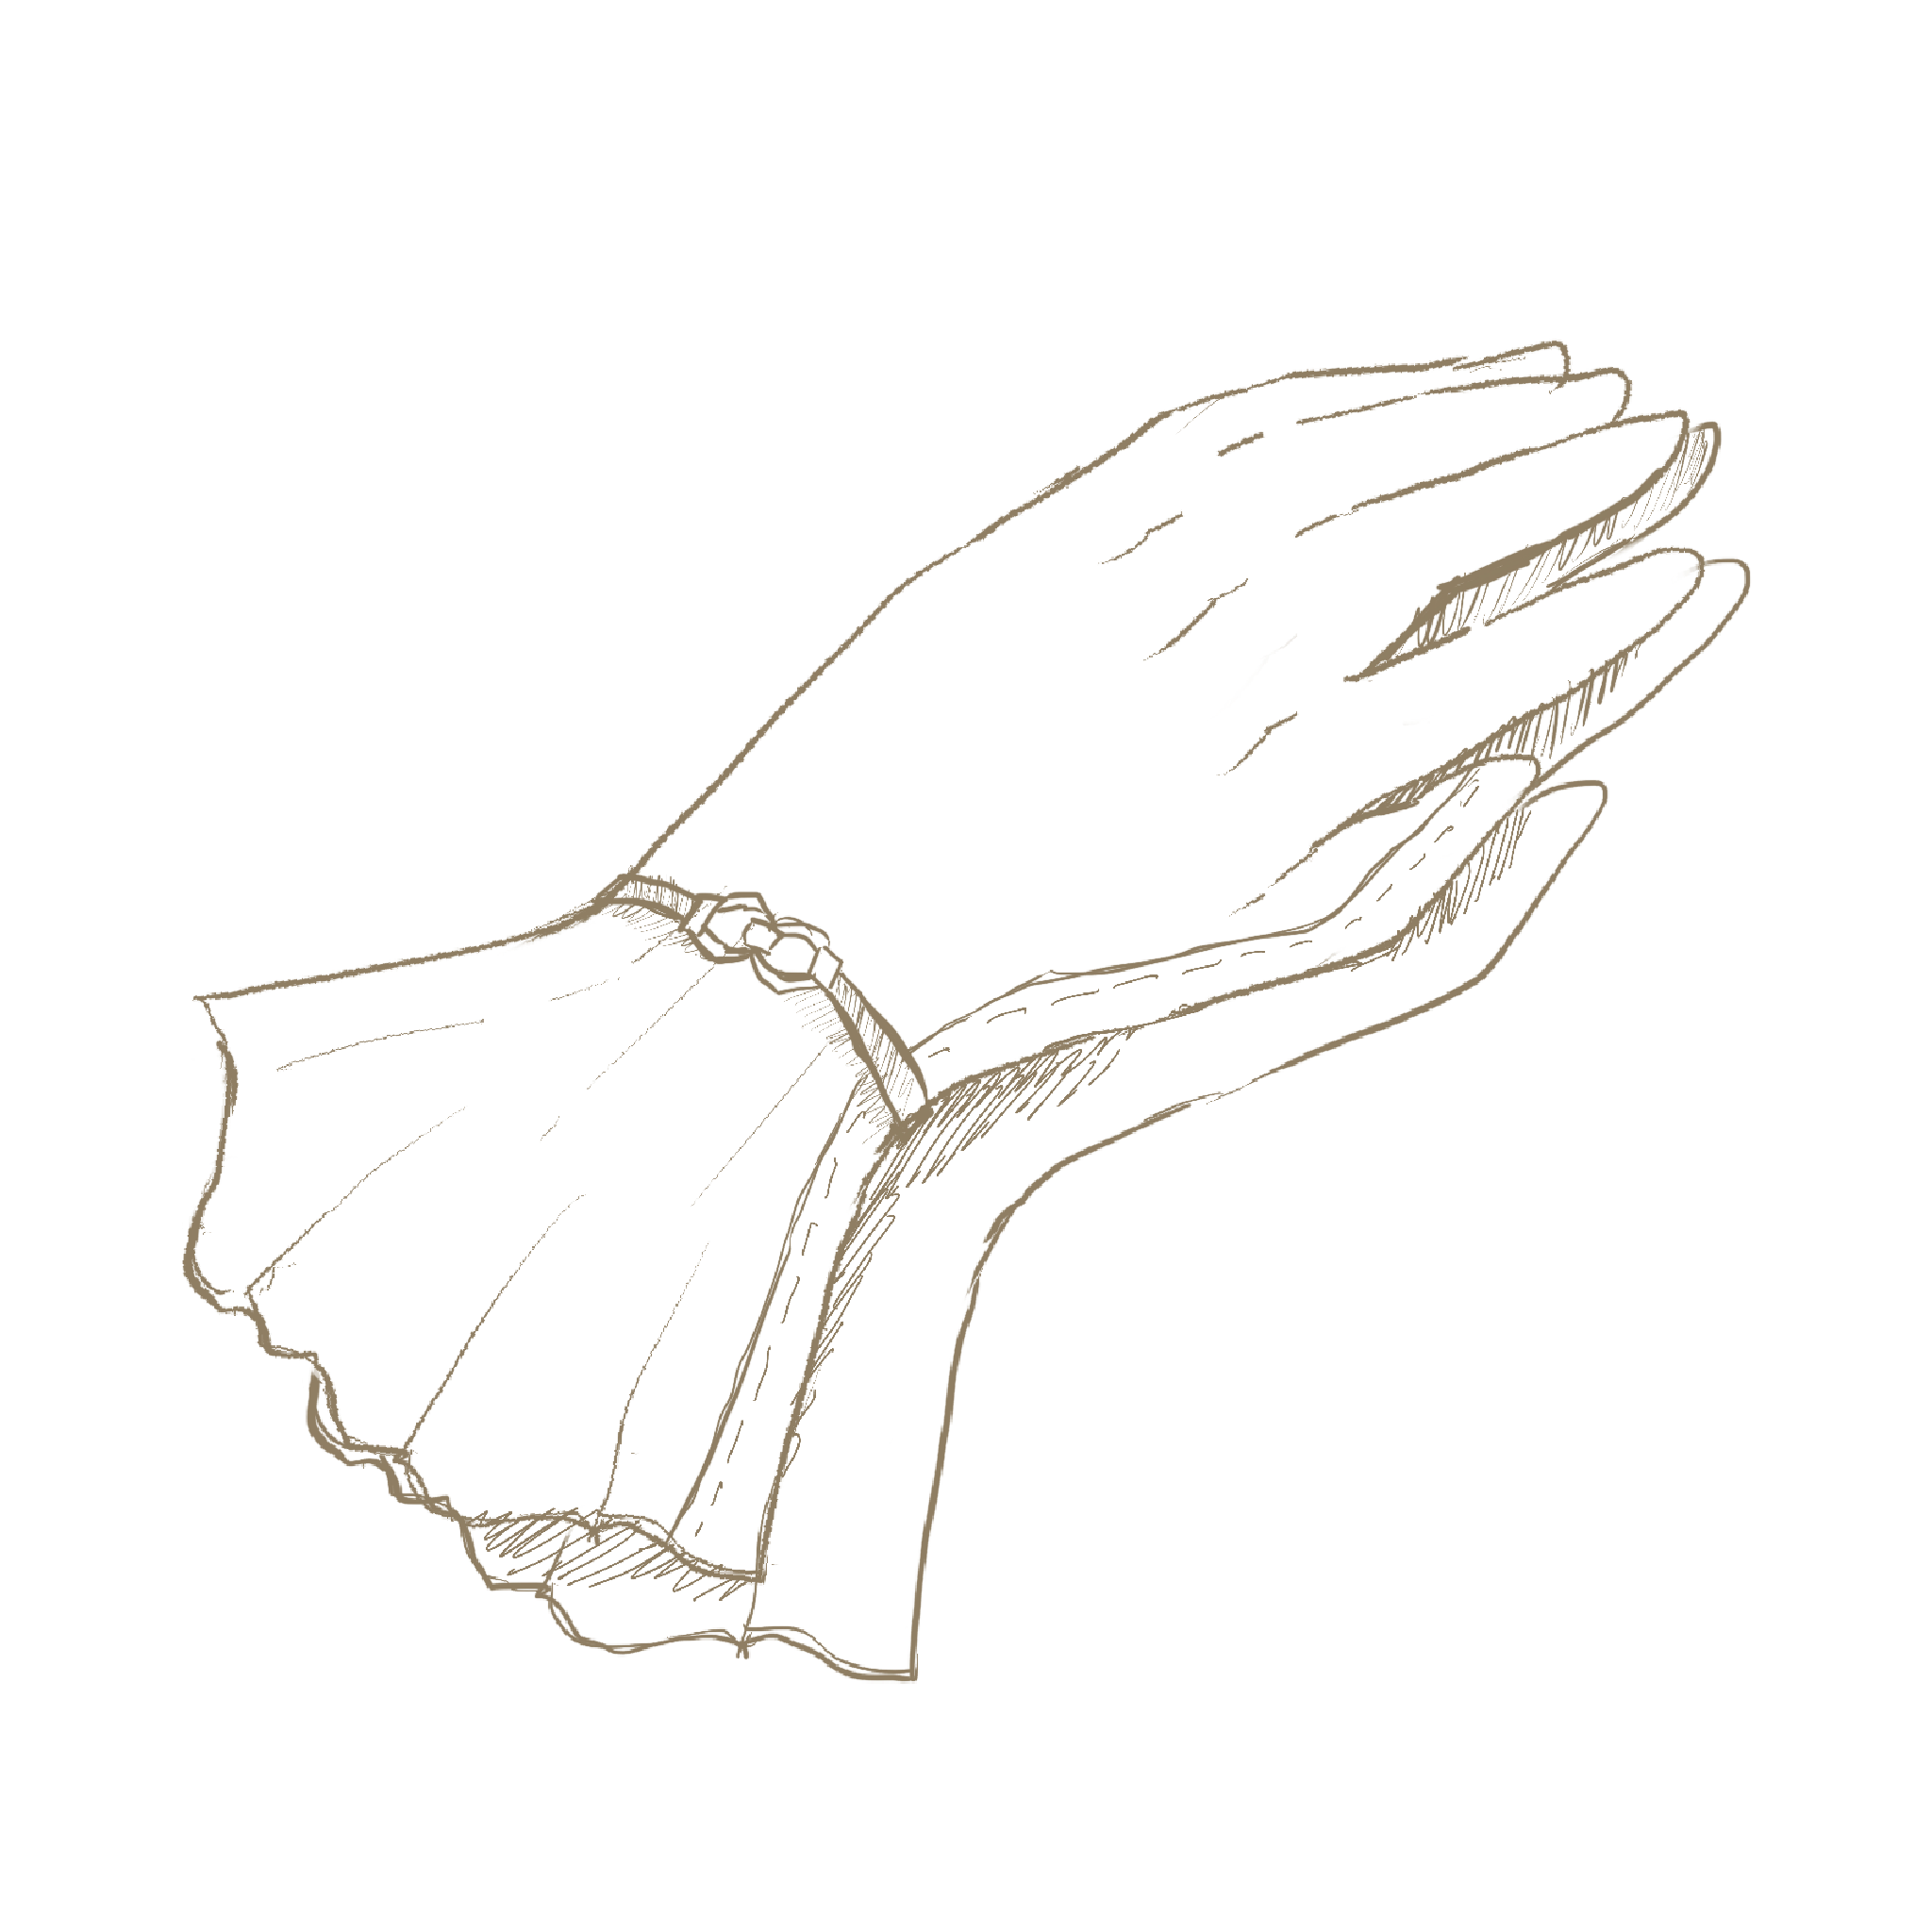 腕に飾りのついたレディース手袋 手書き風イラスト Anttiq 無料アンティークイラスト素材サイト